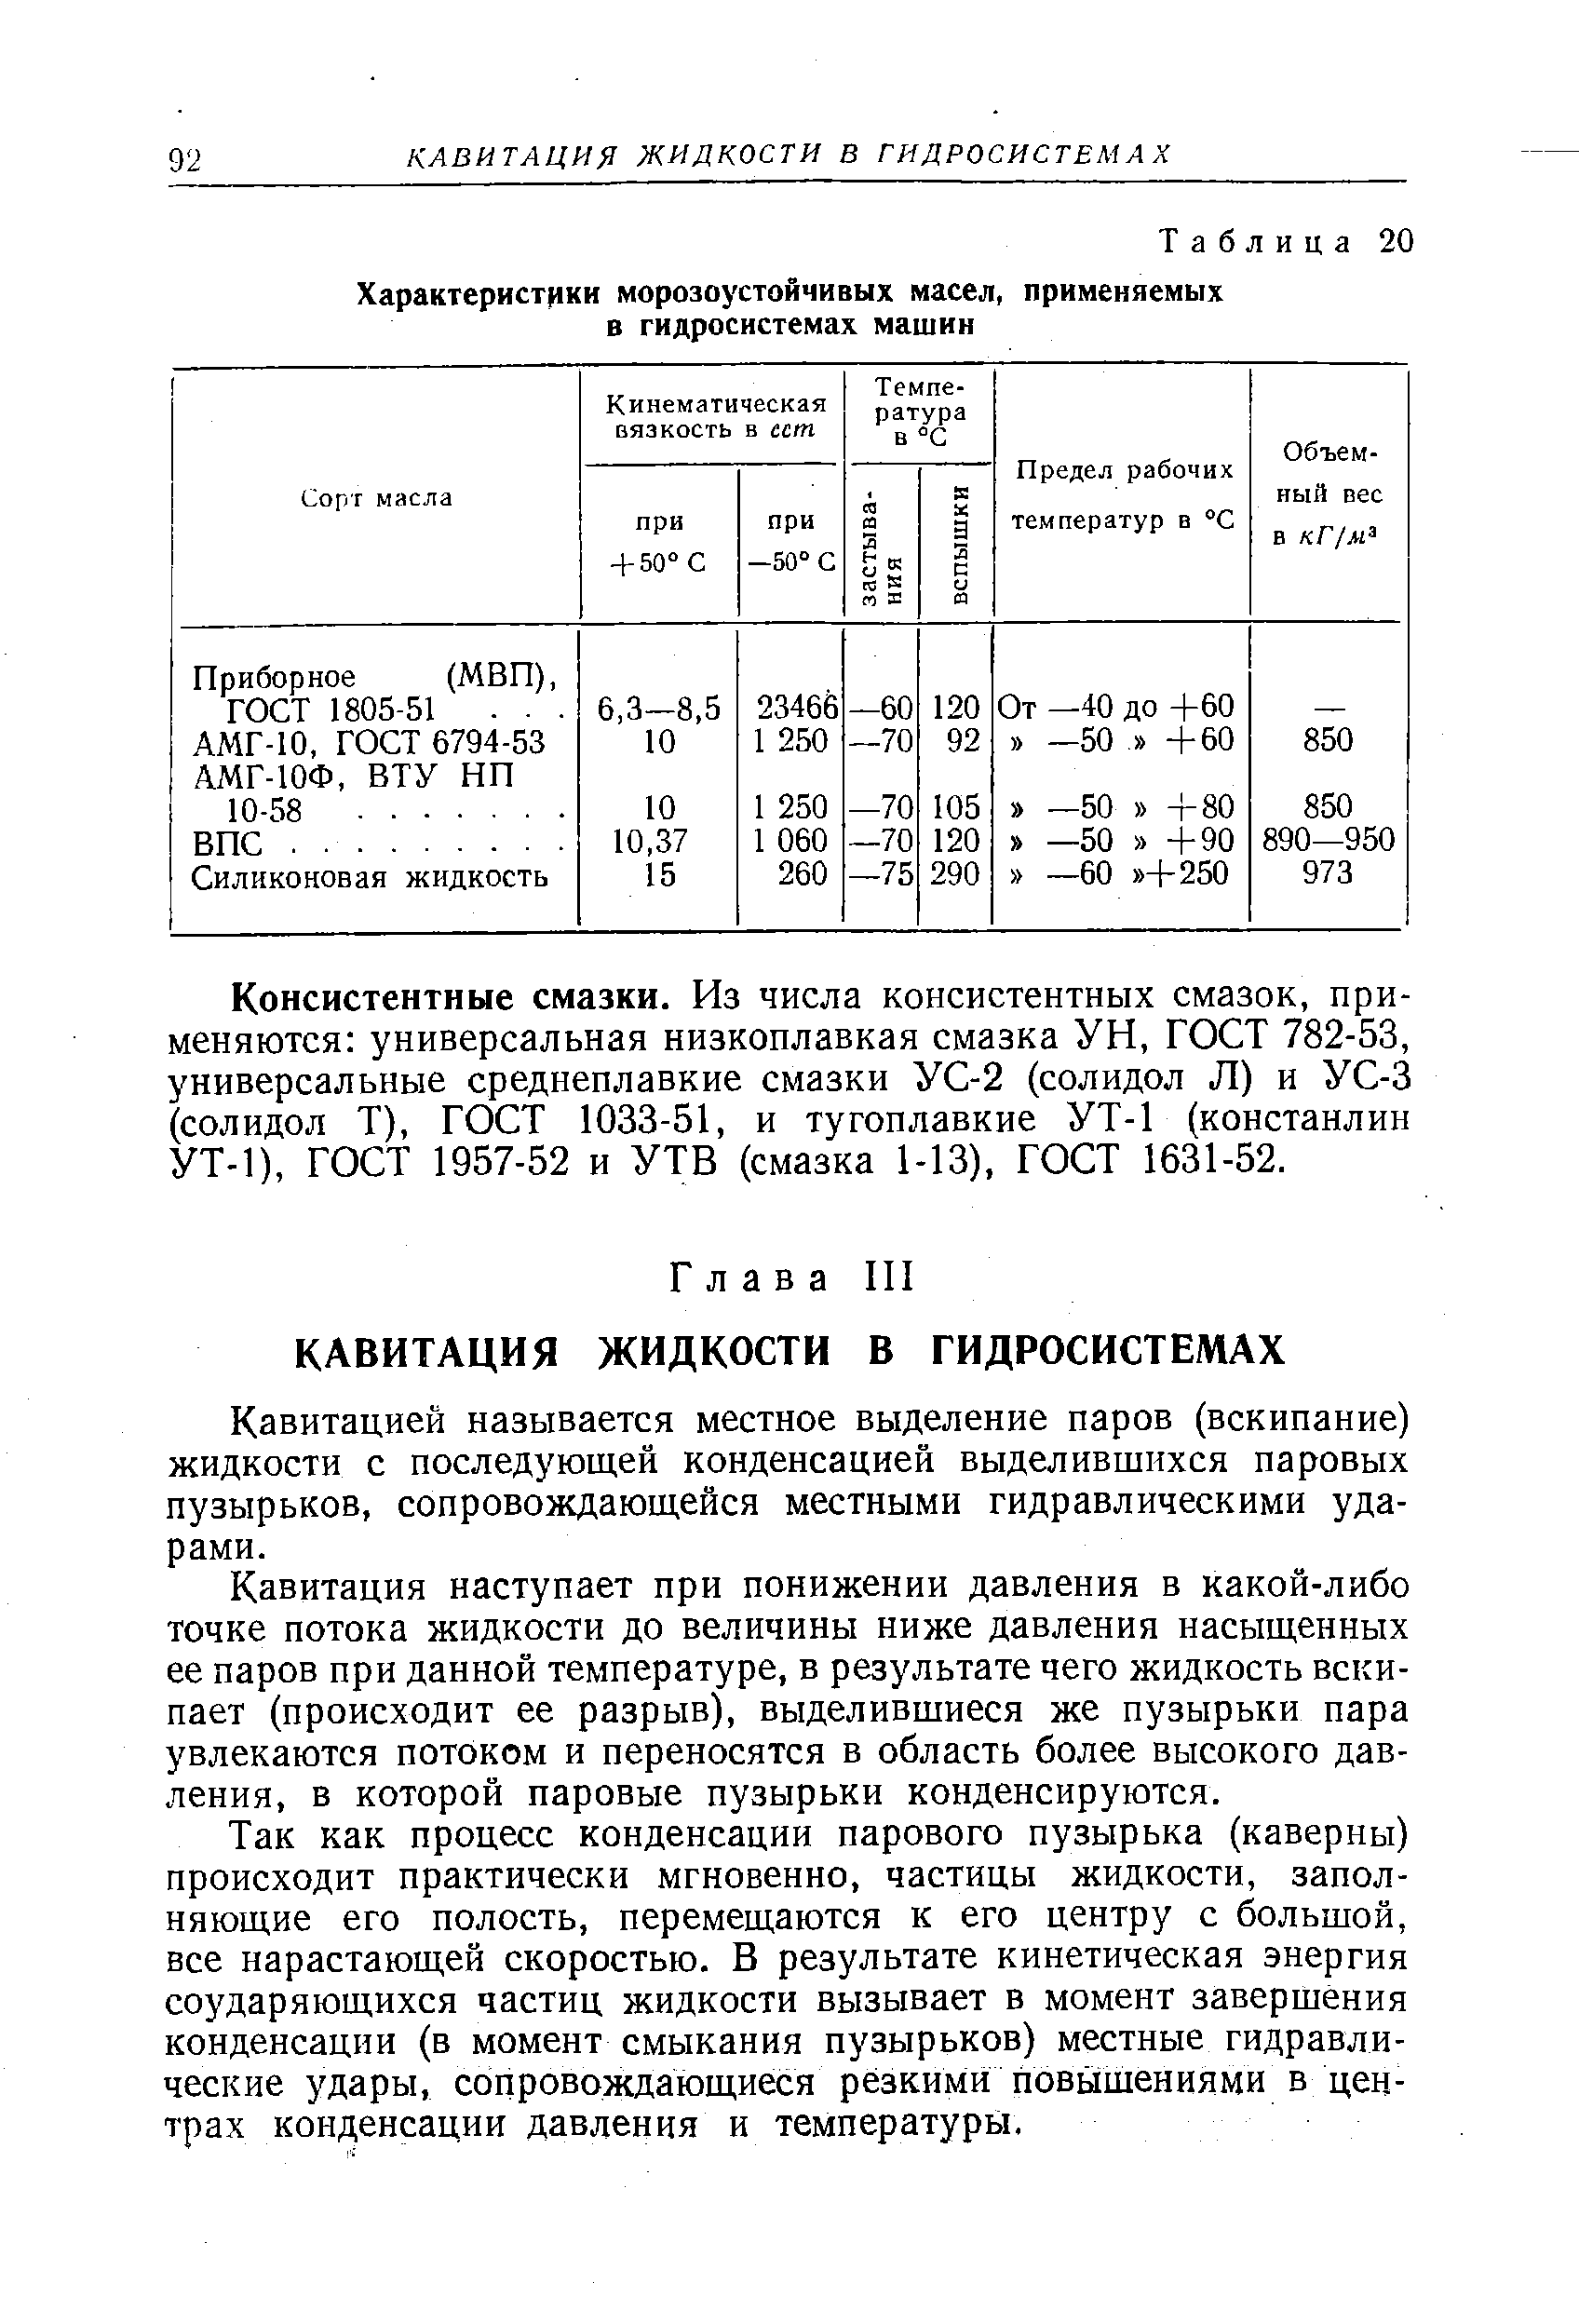 Консистентные смазки. Из числа консистентных смазок, применяются универсальная низкоплавкая смазка УН, ГОСТ 782-53, универсальные среднеплавкие смазки УС-2 (солидол Л) и УС-3 (солидол Т), ГОСТ 1033-51, и тугоплавкие УТ-1 (констанлин УТ-1), ГОСТ 1957-52 и УТВ (смазка 1-13), ГОСТ 1631-52.
